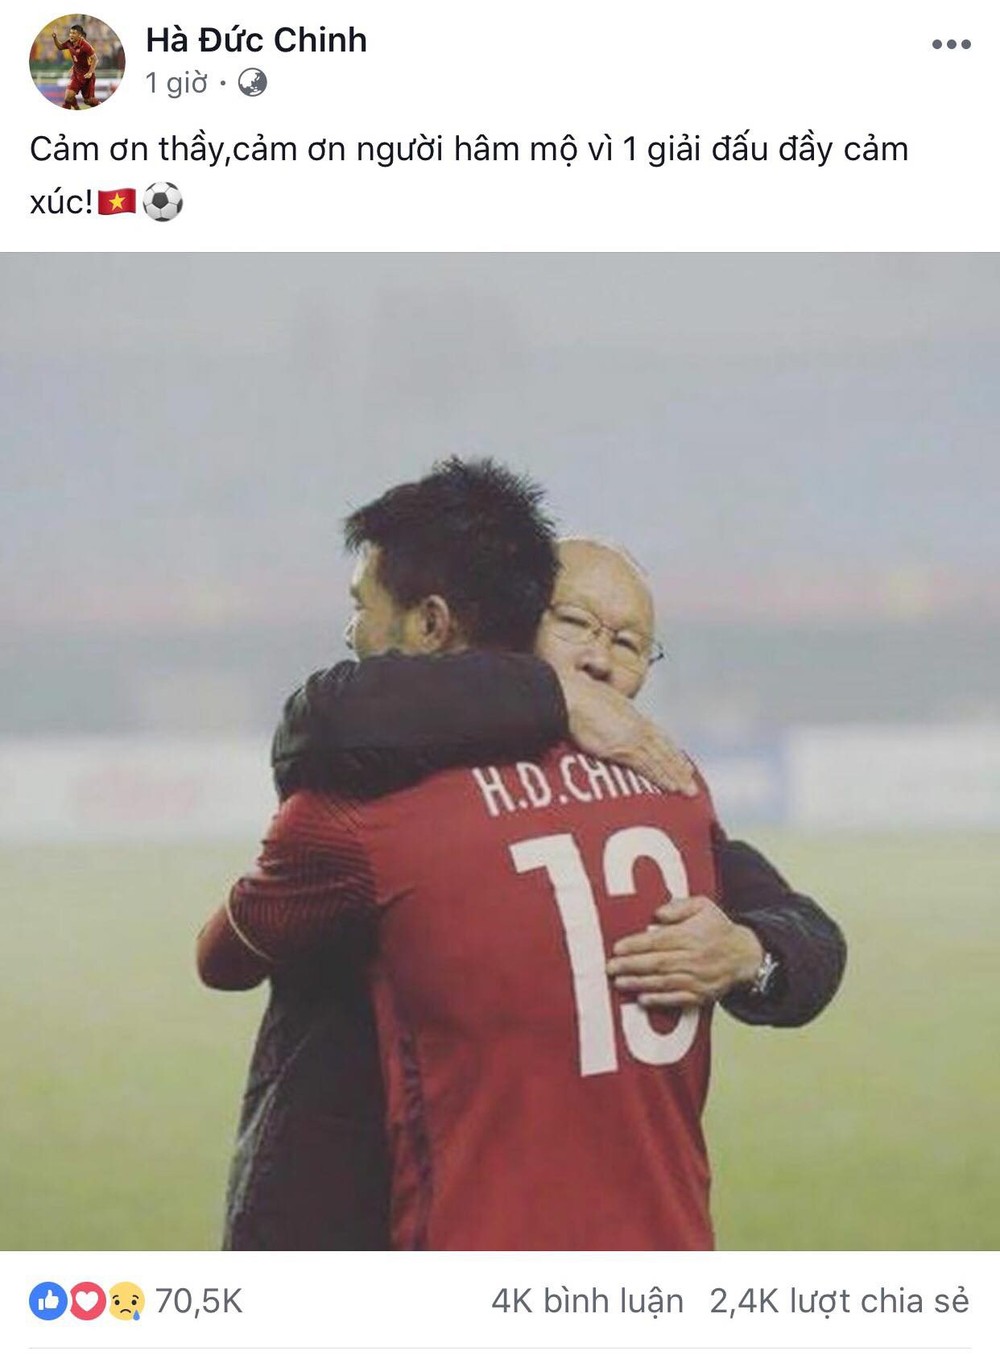 Công Phượng, Văn Toàn cùng nhiều cầu thủ nói lời tạm biệt U23 Việt Nam sau thất bại trước UAE - Ảnh 5.